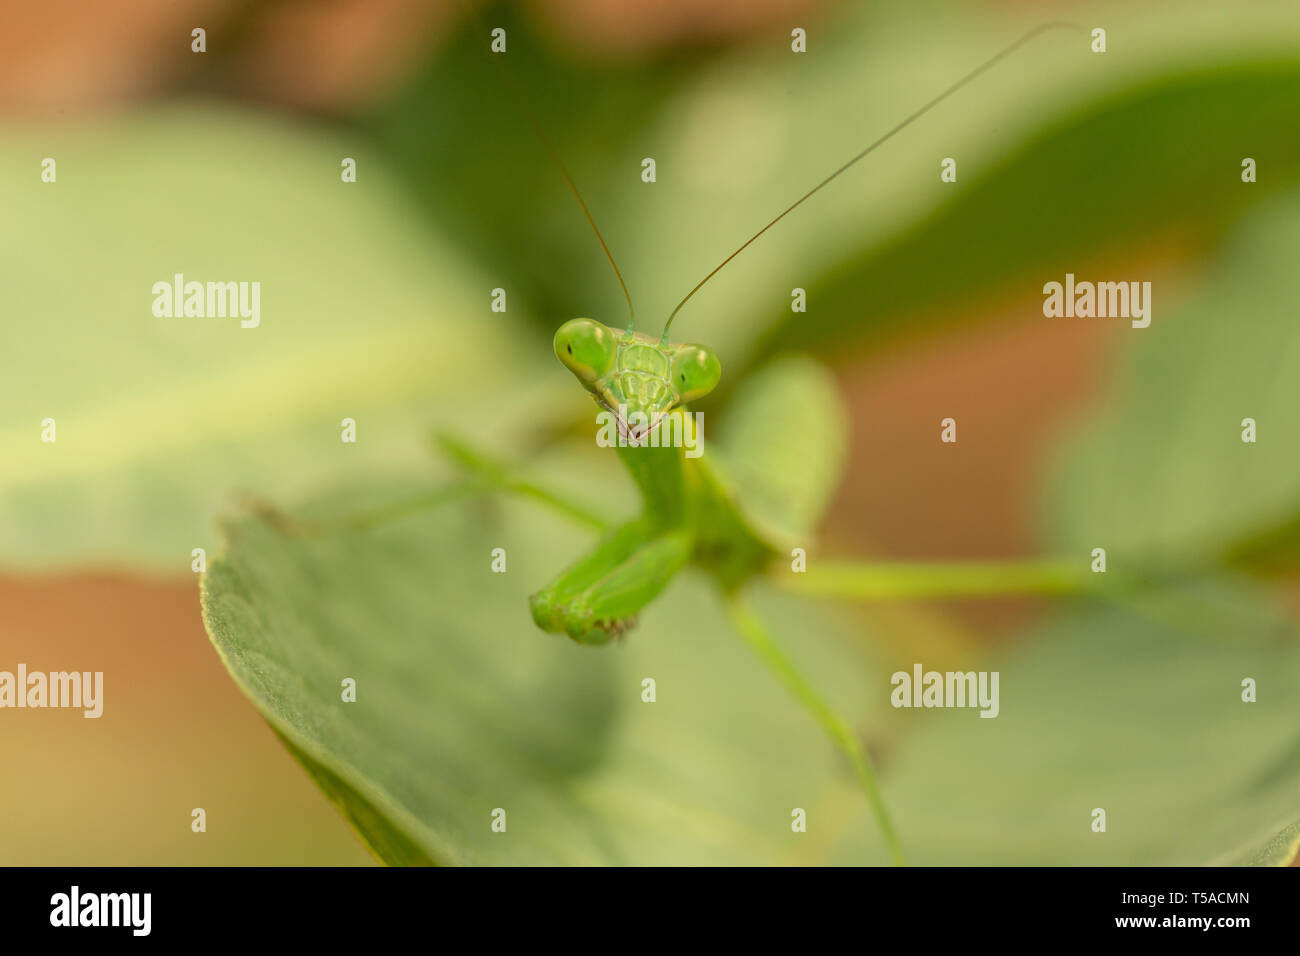 close up of praying mantis Stock Photo